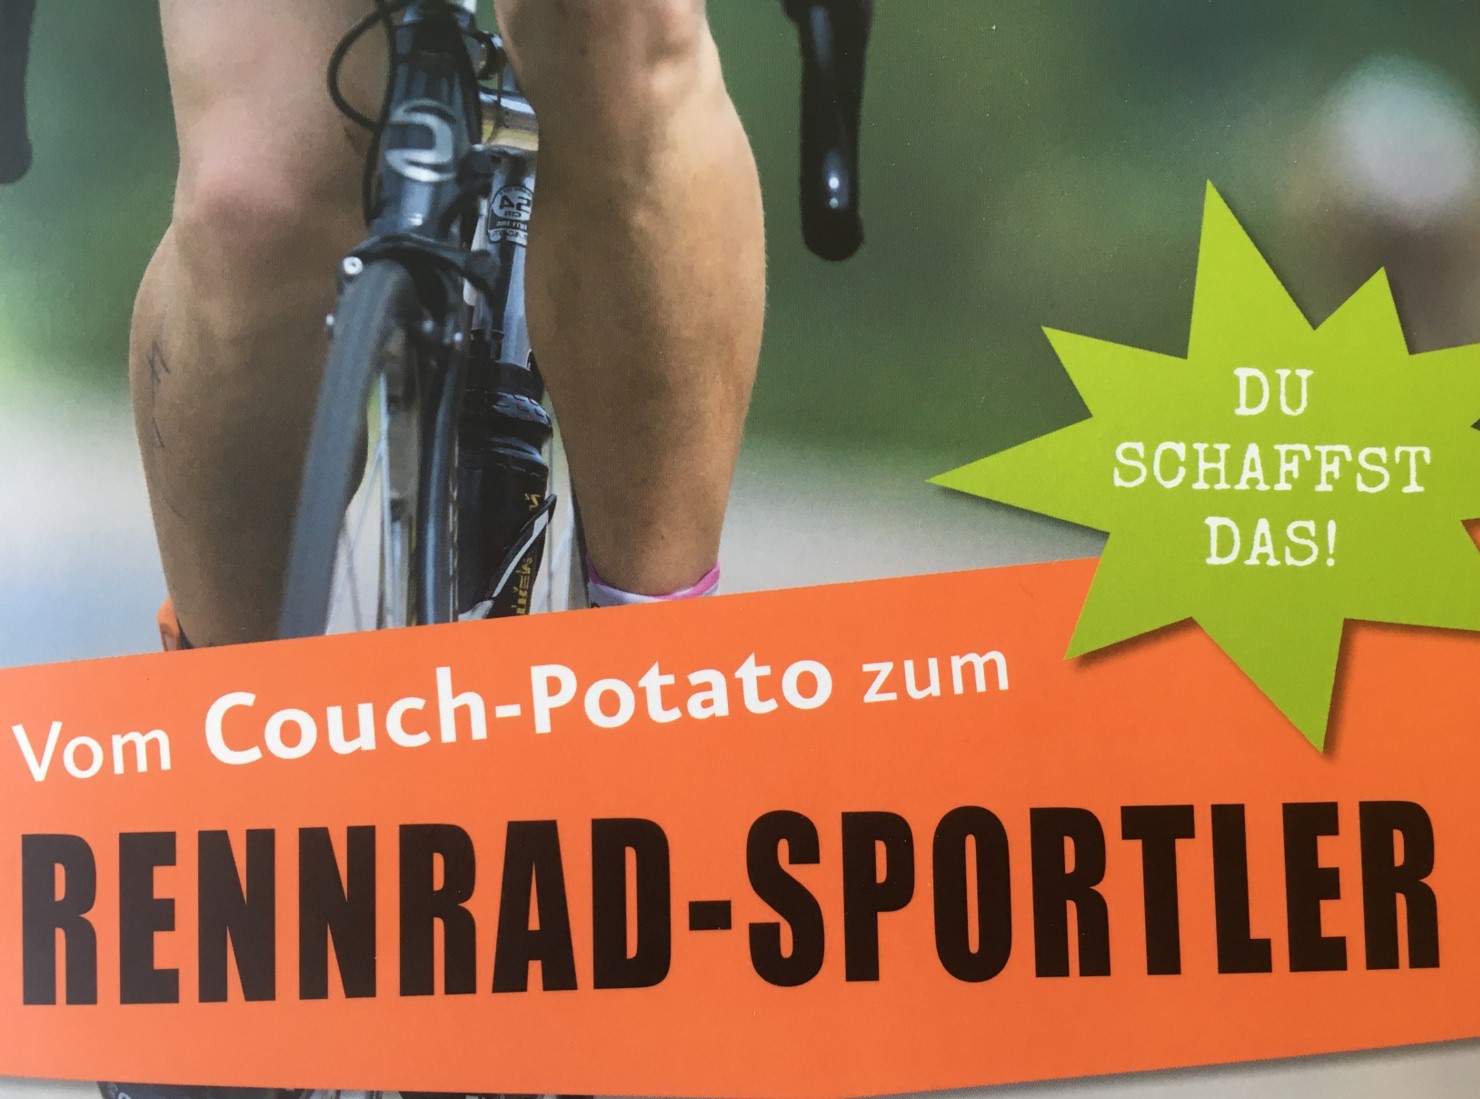 Vom Couch-Potato zum Rennrad-Sportler